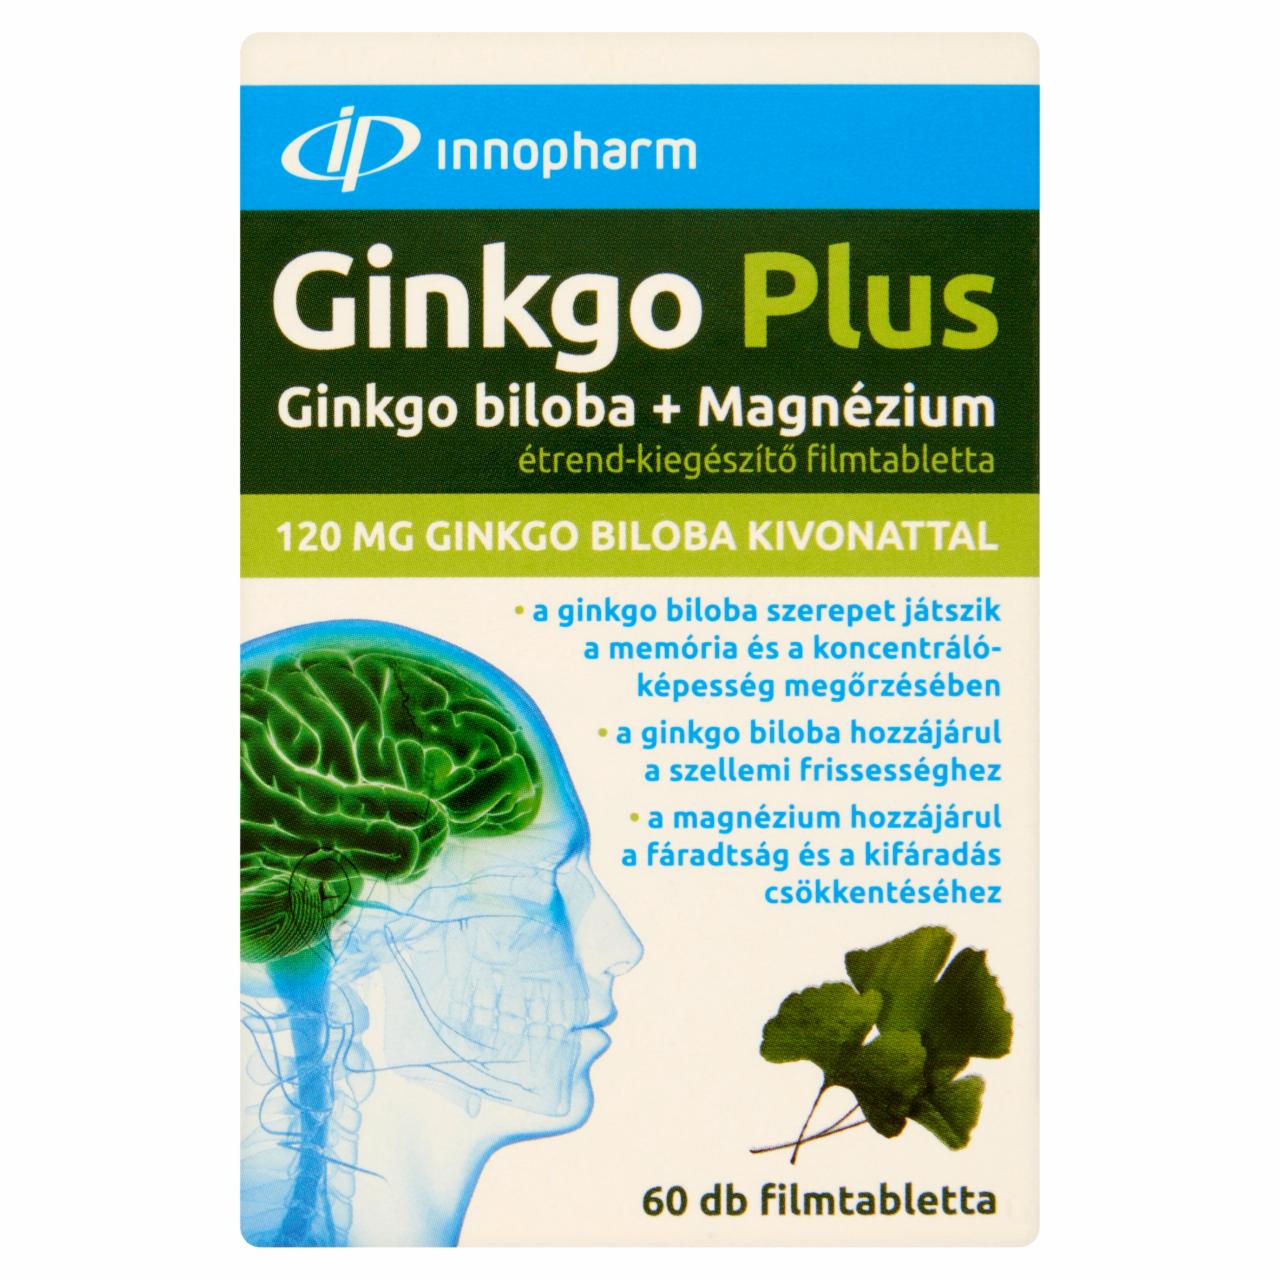 Képek - Innopharm Ginkgo Plus Ginkgo Biloba + Magnézium étrend-kiegészítő filmtabletta 60 db 72 g